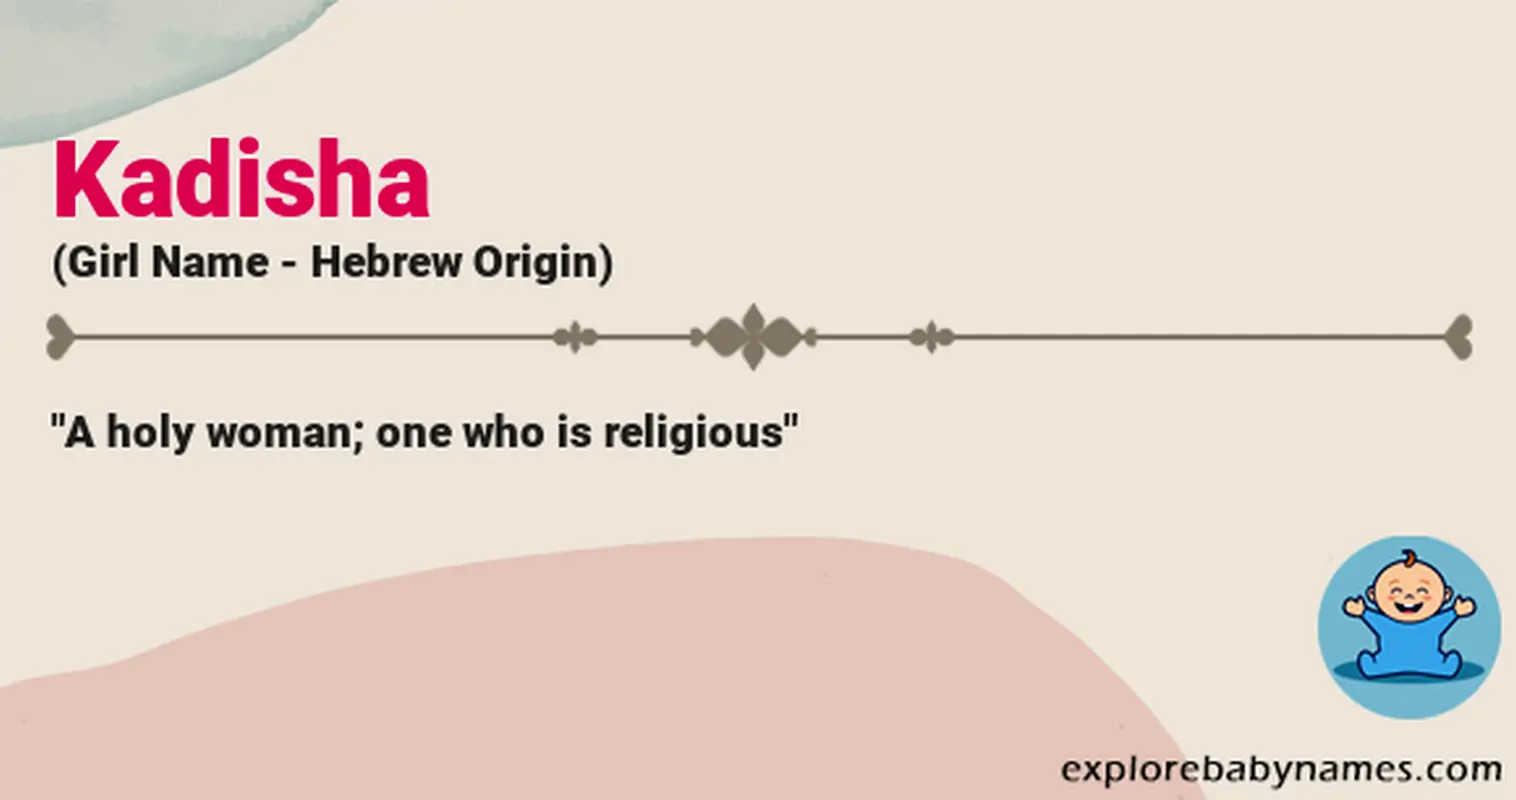 Meaning of Kadisha